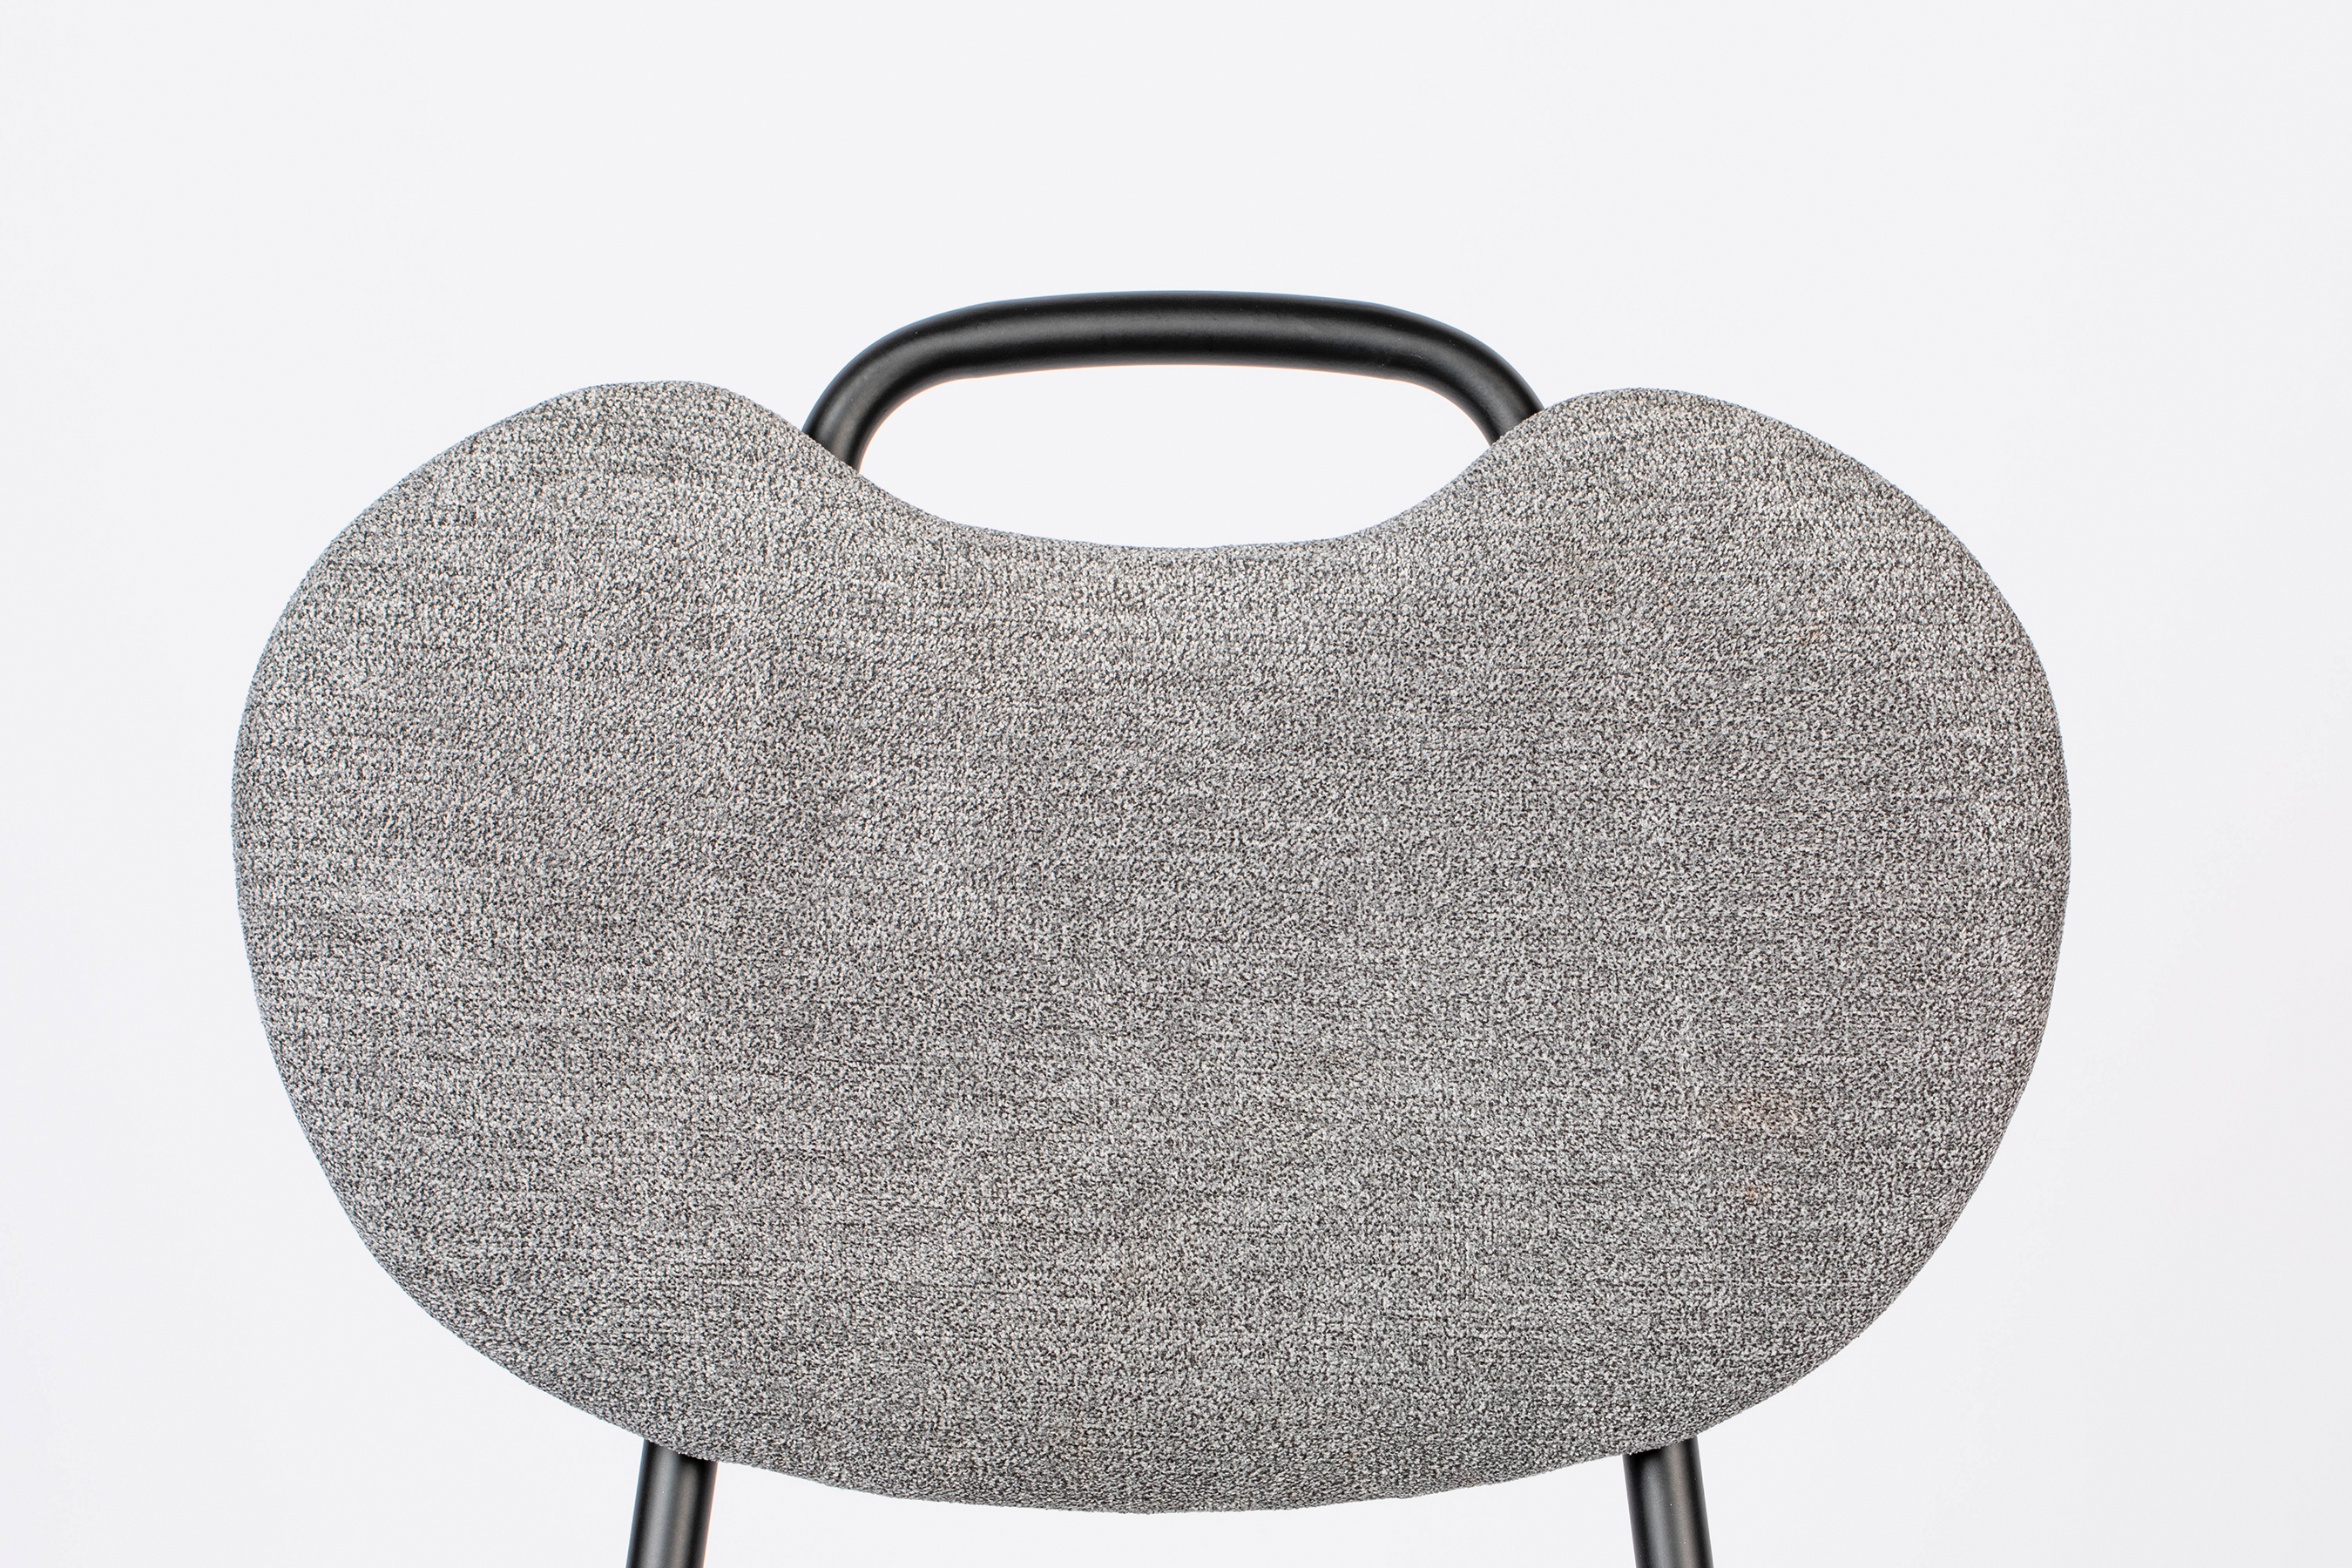 Stuhl Aspen gepolstert - KAQTU Design